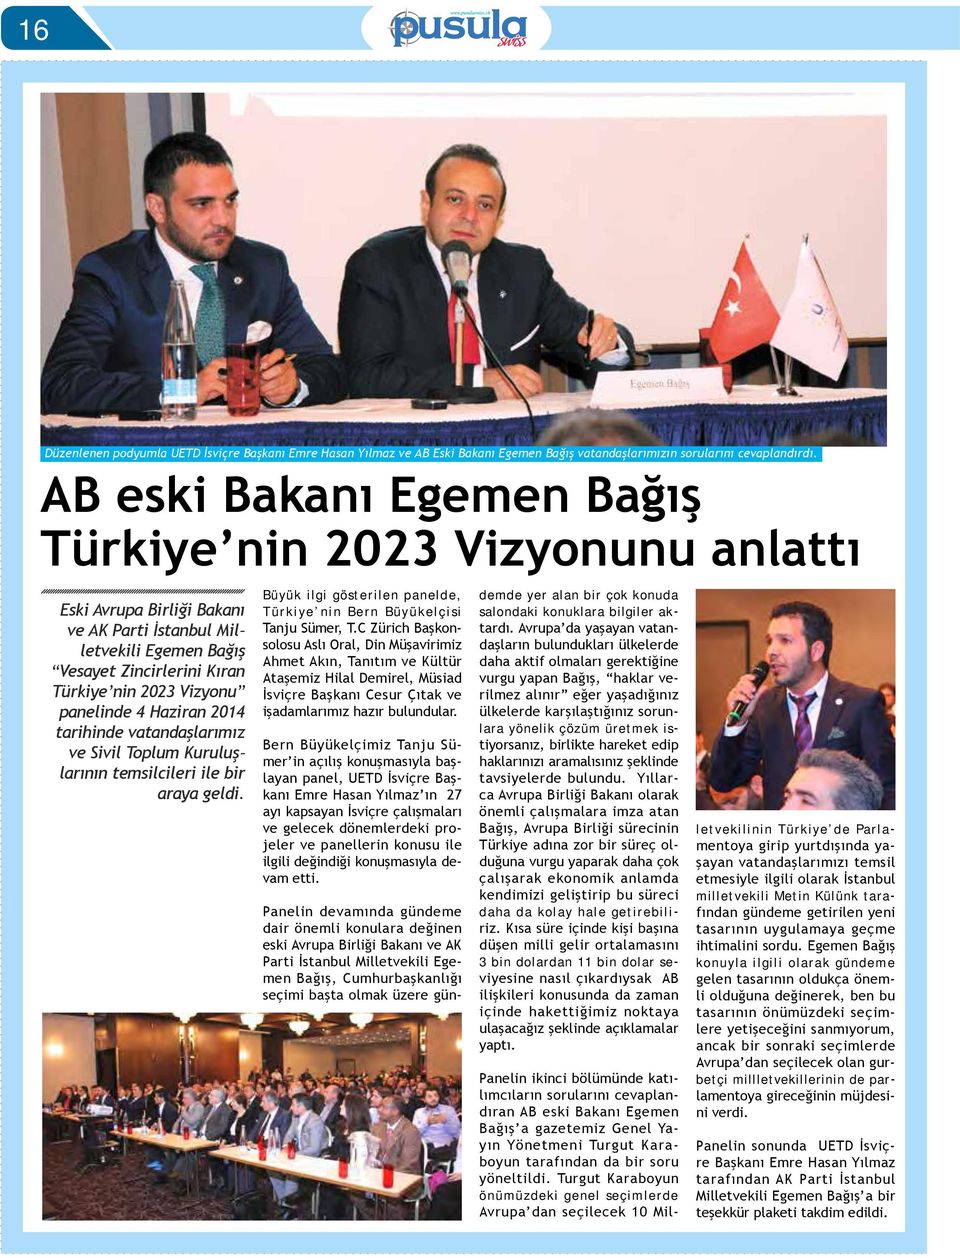 4 Haziran 2014 tarihinde vatandaşlarımız ve Sivil Toplum Kuruluşlarının temsilcileri ile bir araya geldi. Büyük ilgi gösterilen panelde, Türkiye nin Bern Büyükelçisi Tanju Sümer, T.